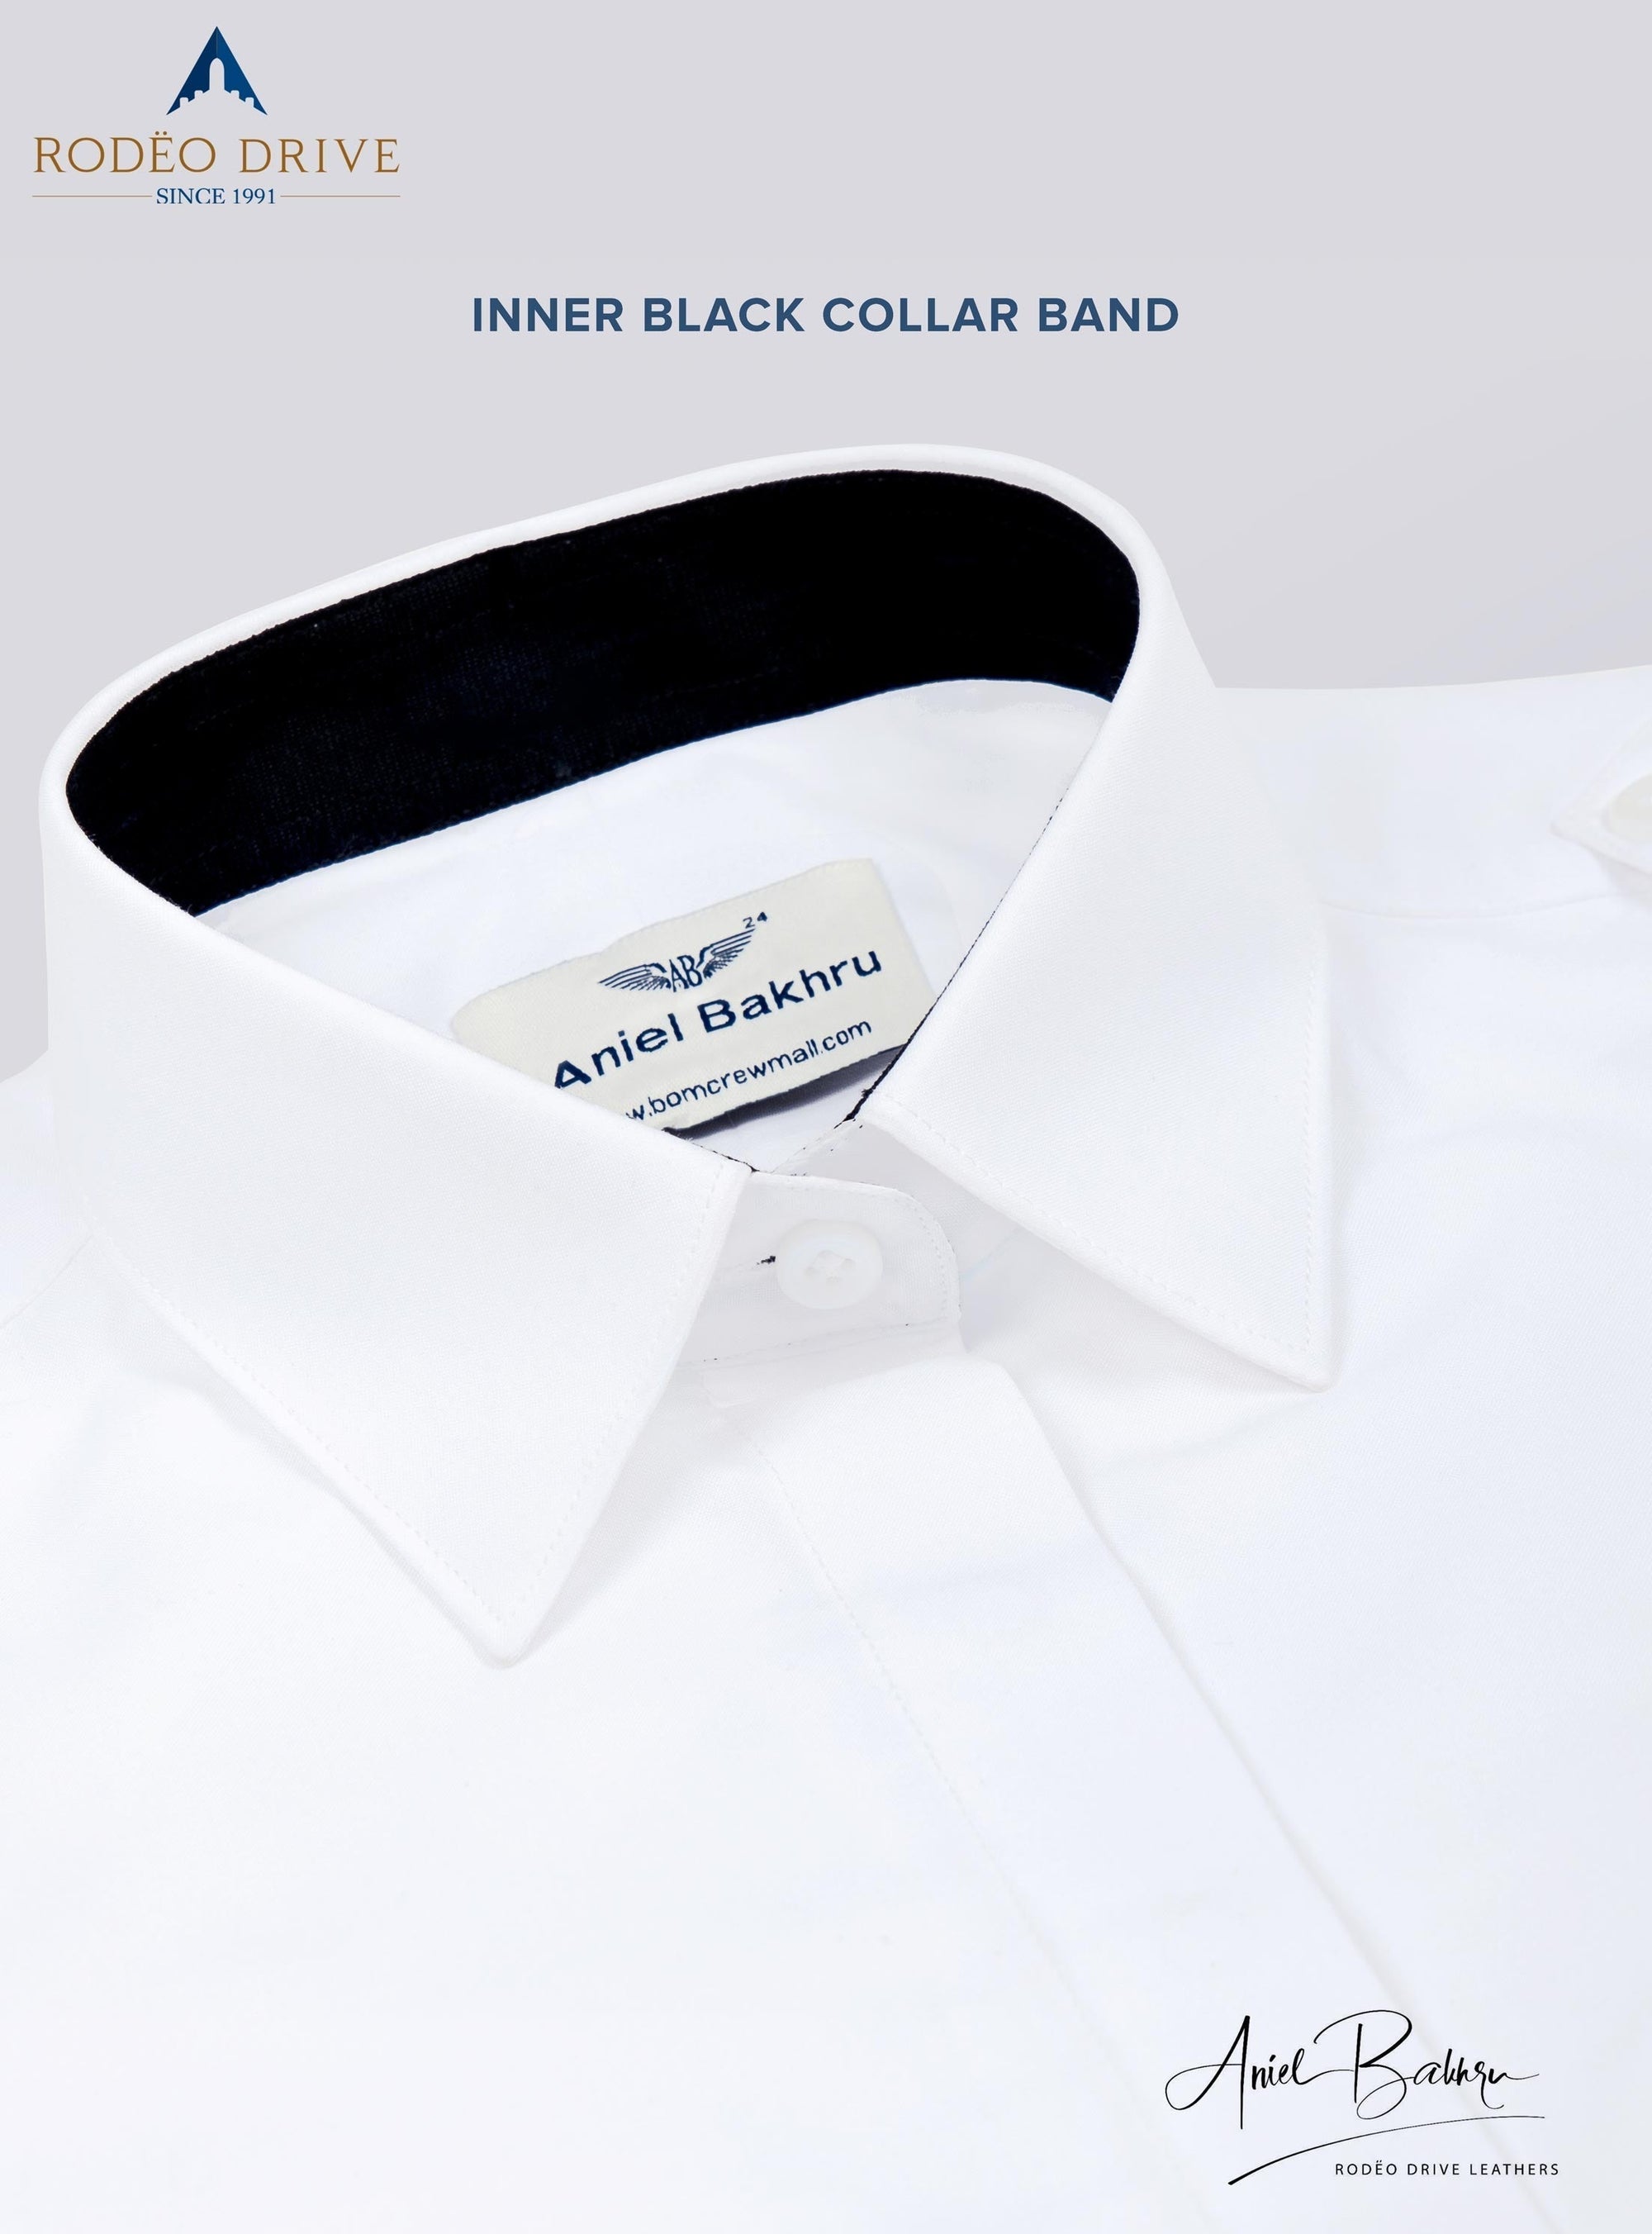 inner black collar band image of Custom Women's Pilot shirt